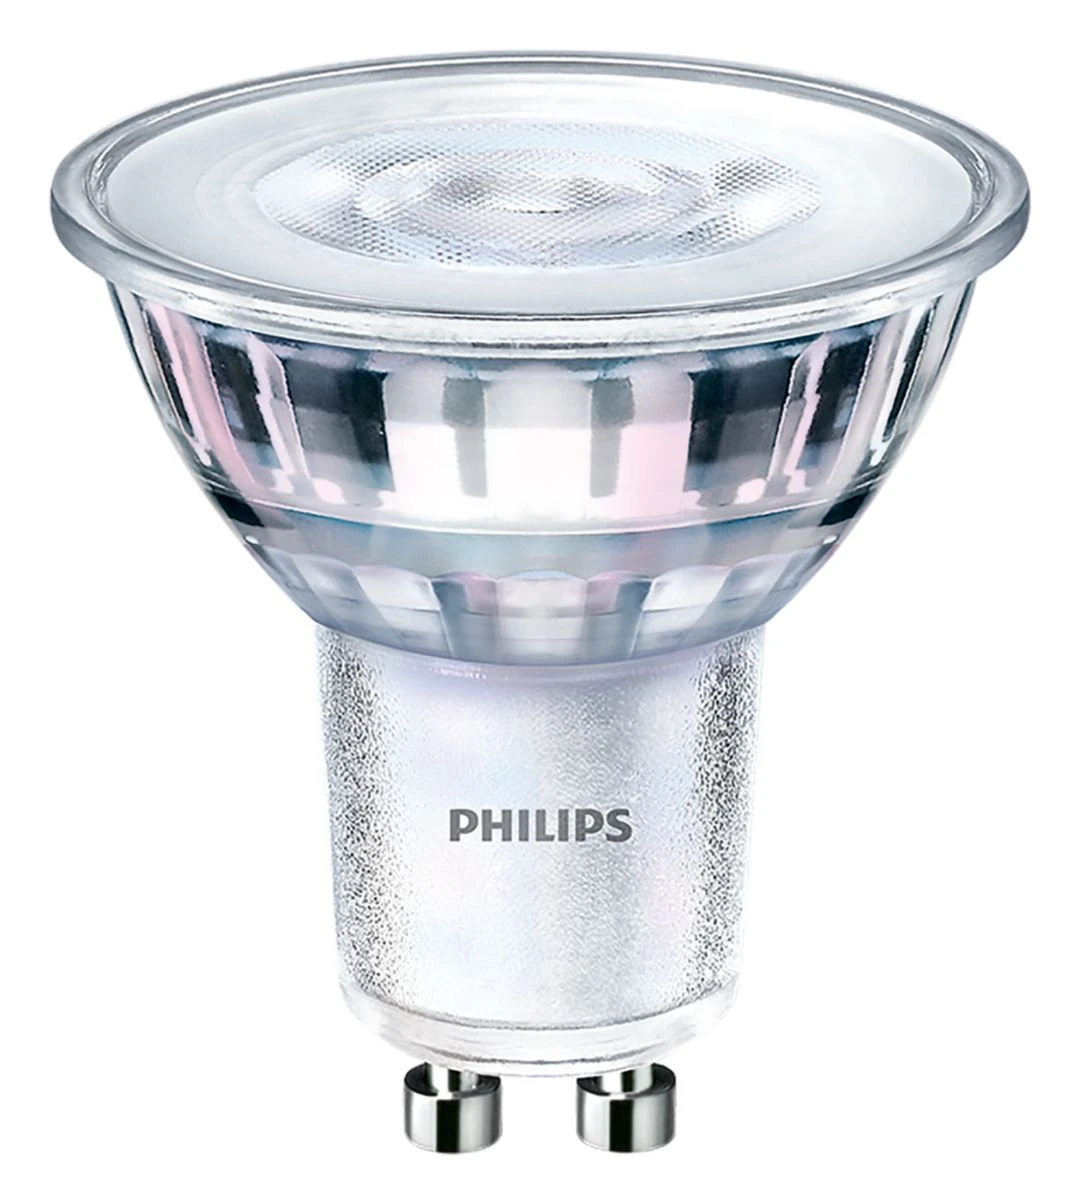 Philips LED-lamp COREPRO LEDSPOT 4-35W GU10 830 36D DIM